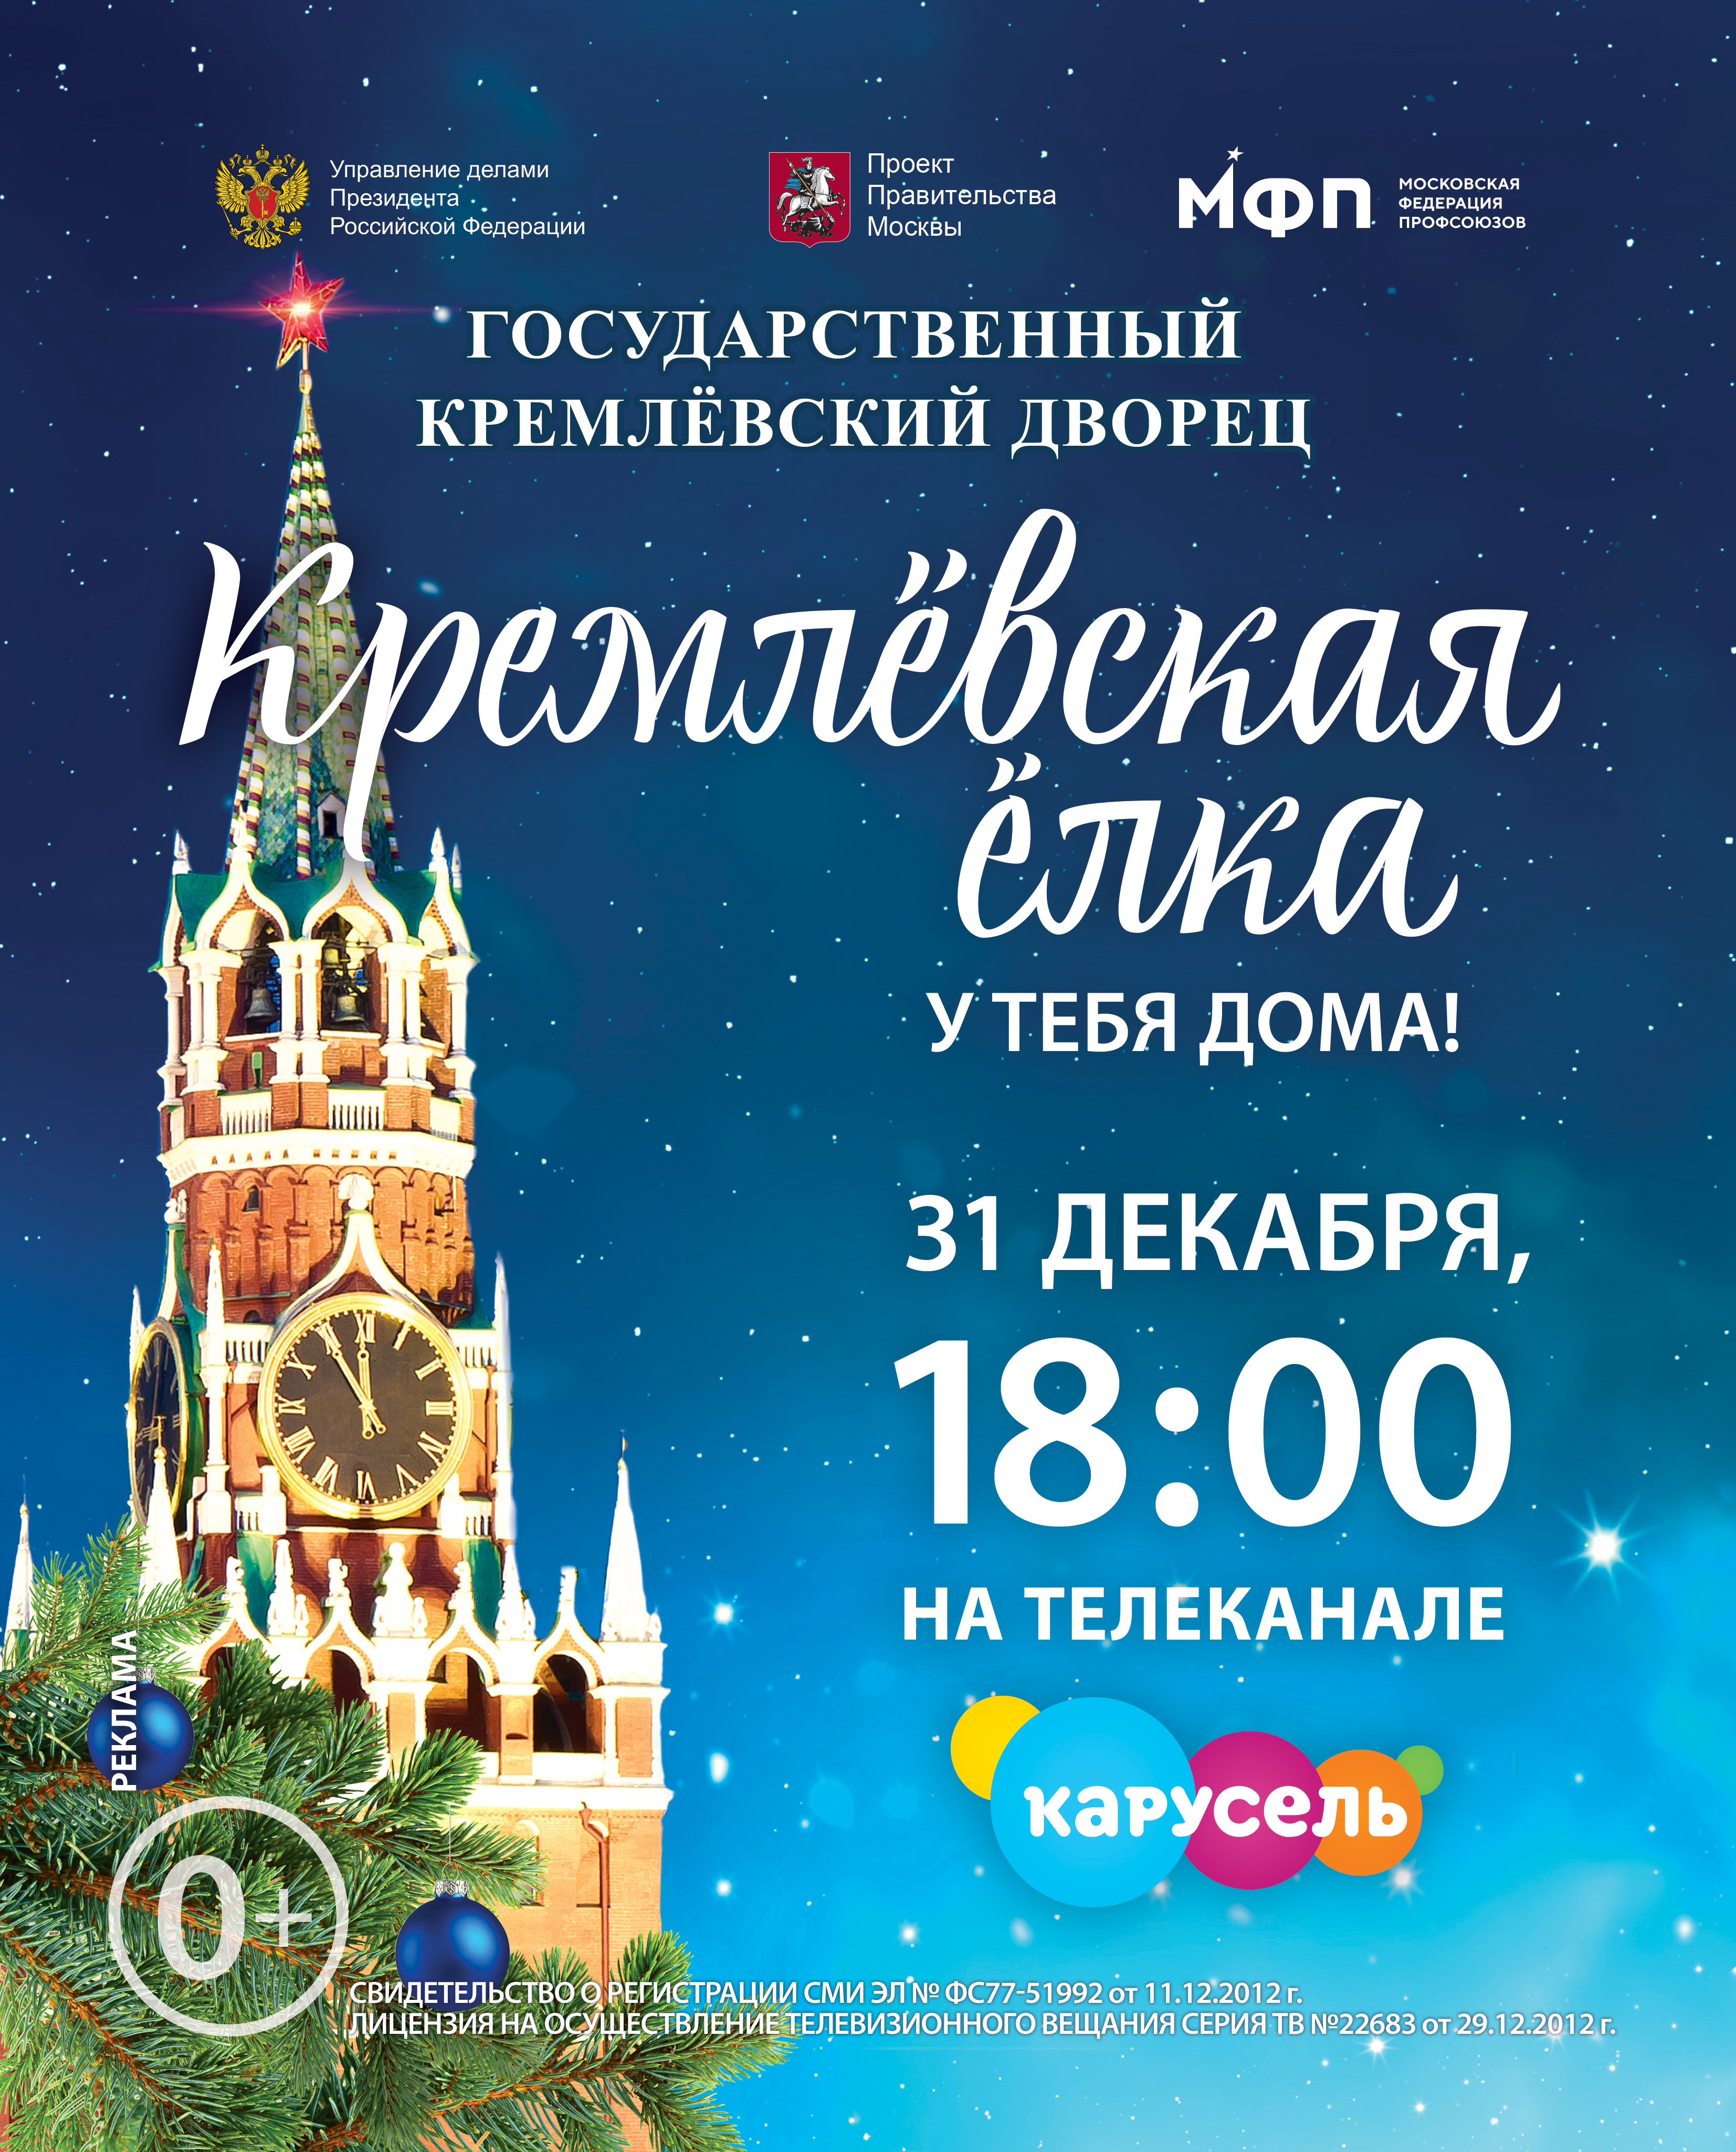 31 декабря эксклюзивным телевизионным событием станет трансляция «Кремлёвской ёлки» на канале «Карусель» 